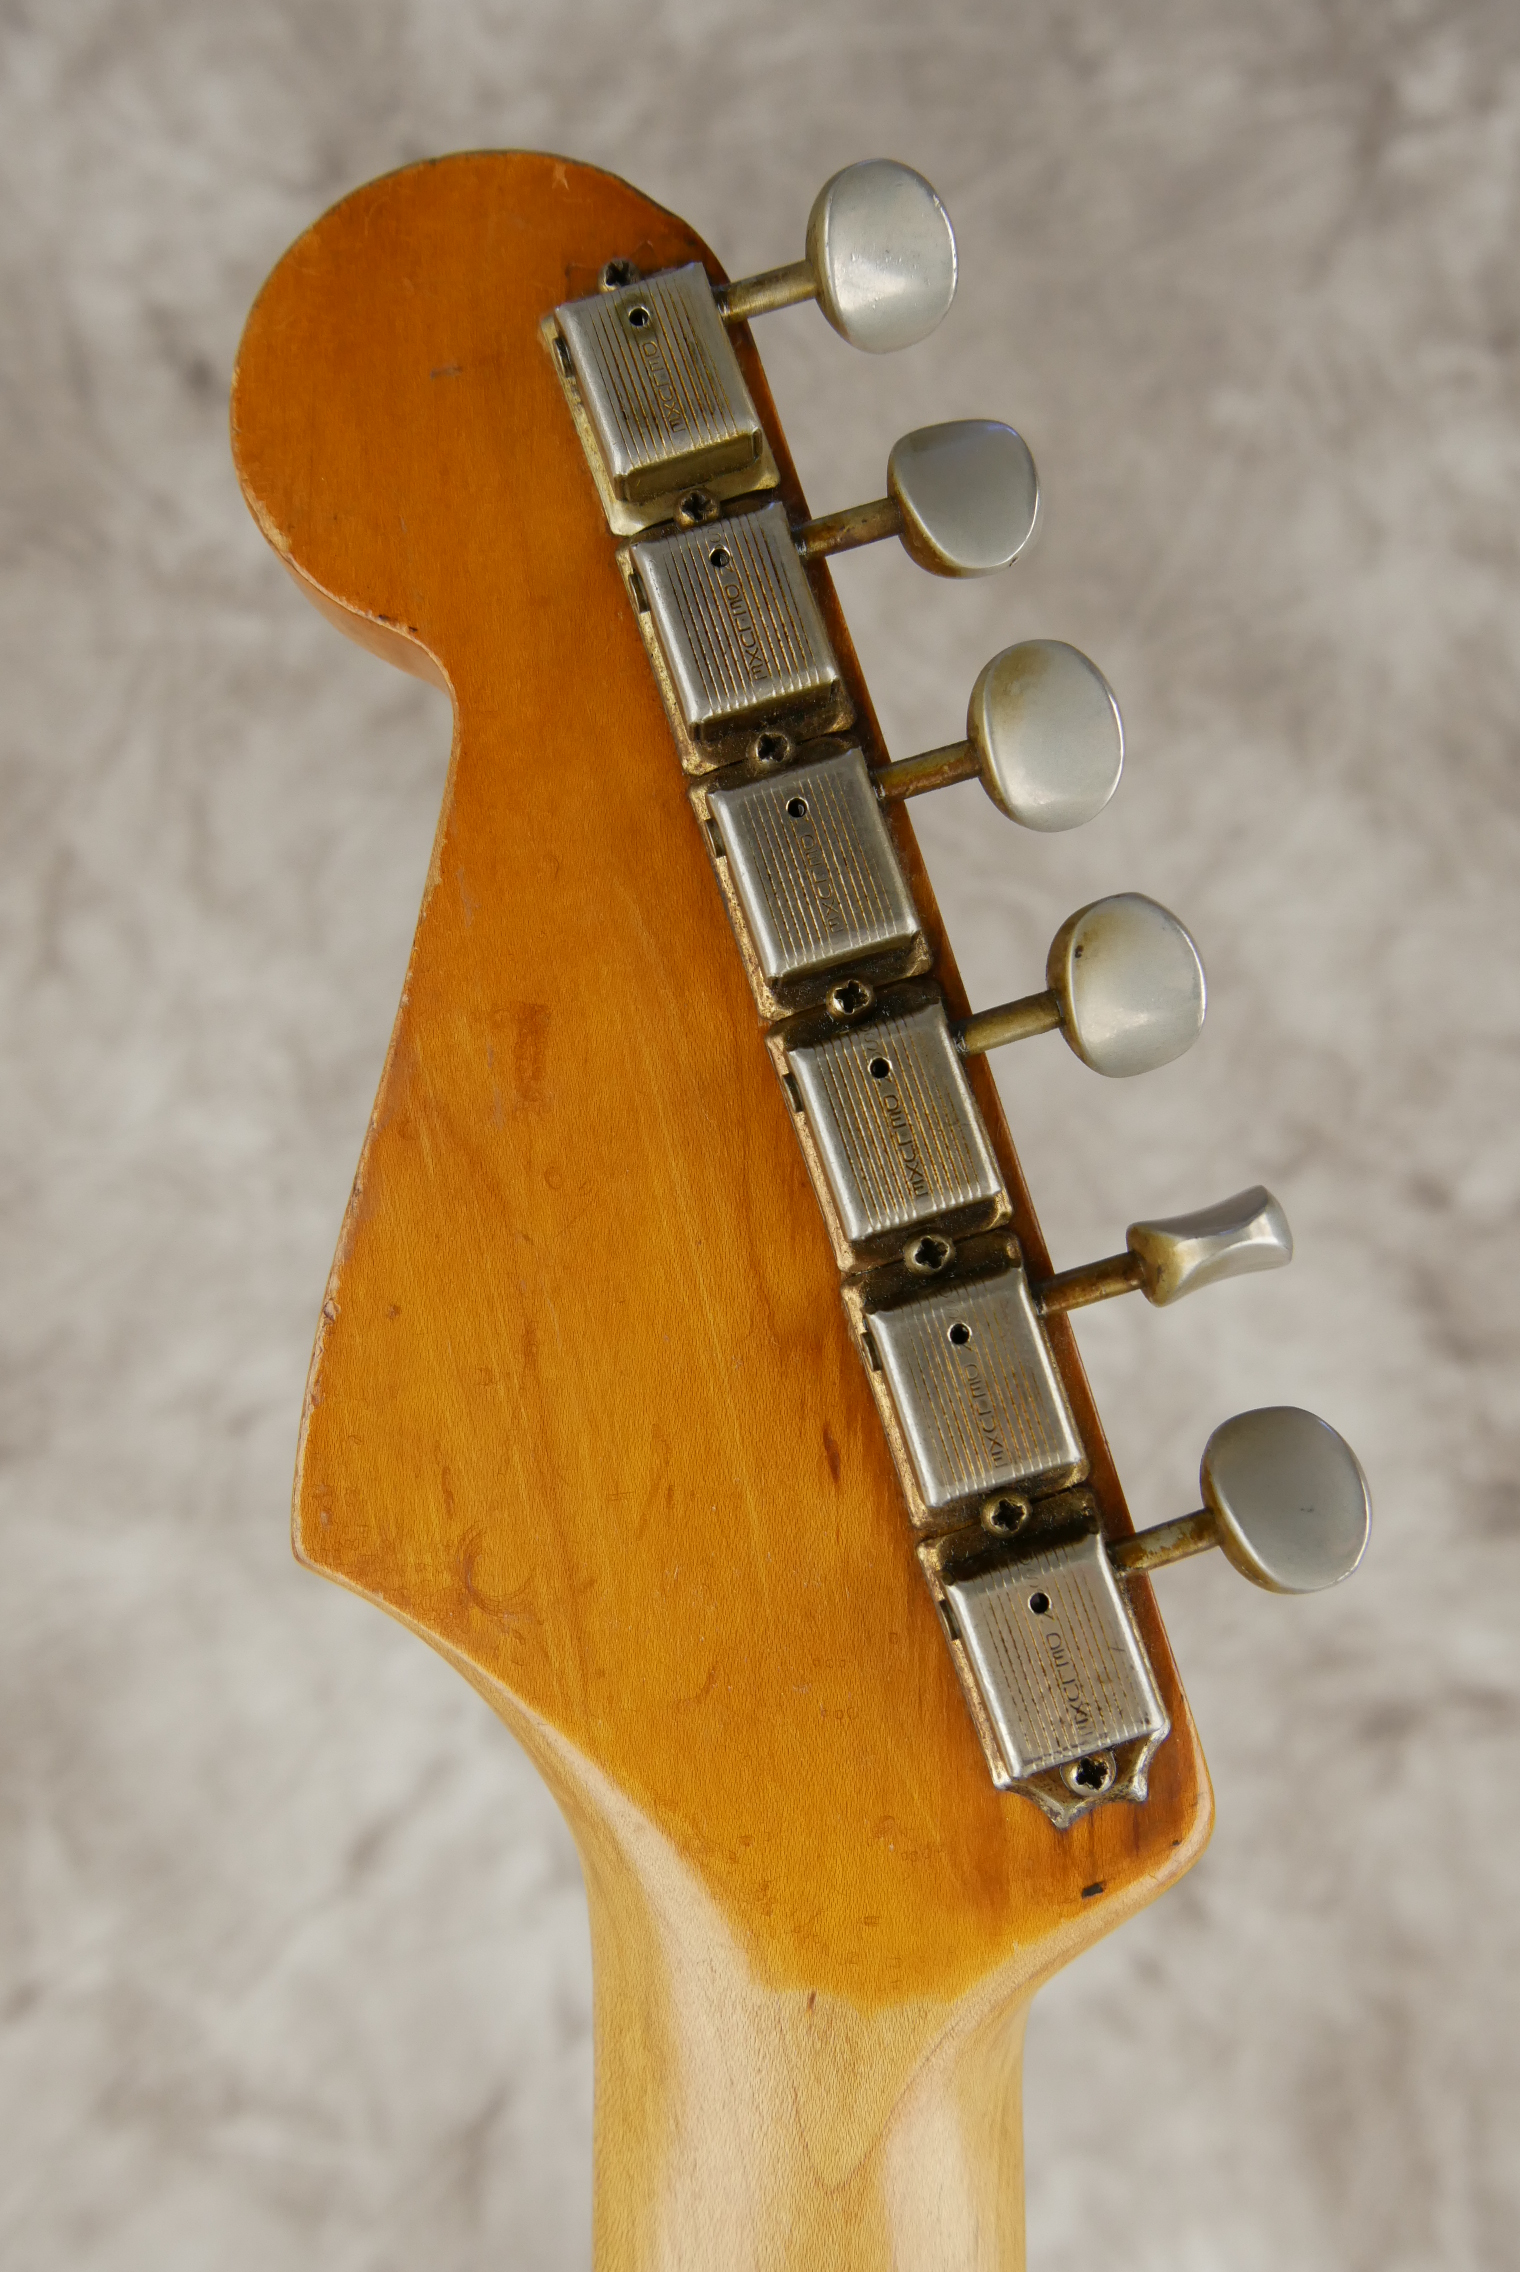 Fender-Stratocaster-1964-orange-refinish-010.JPG